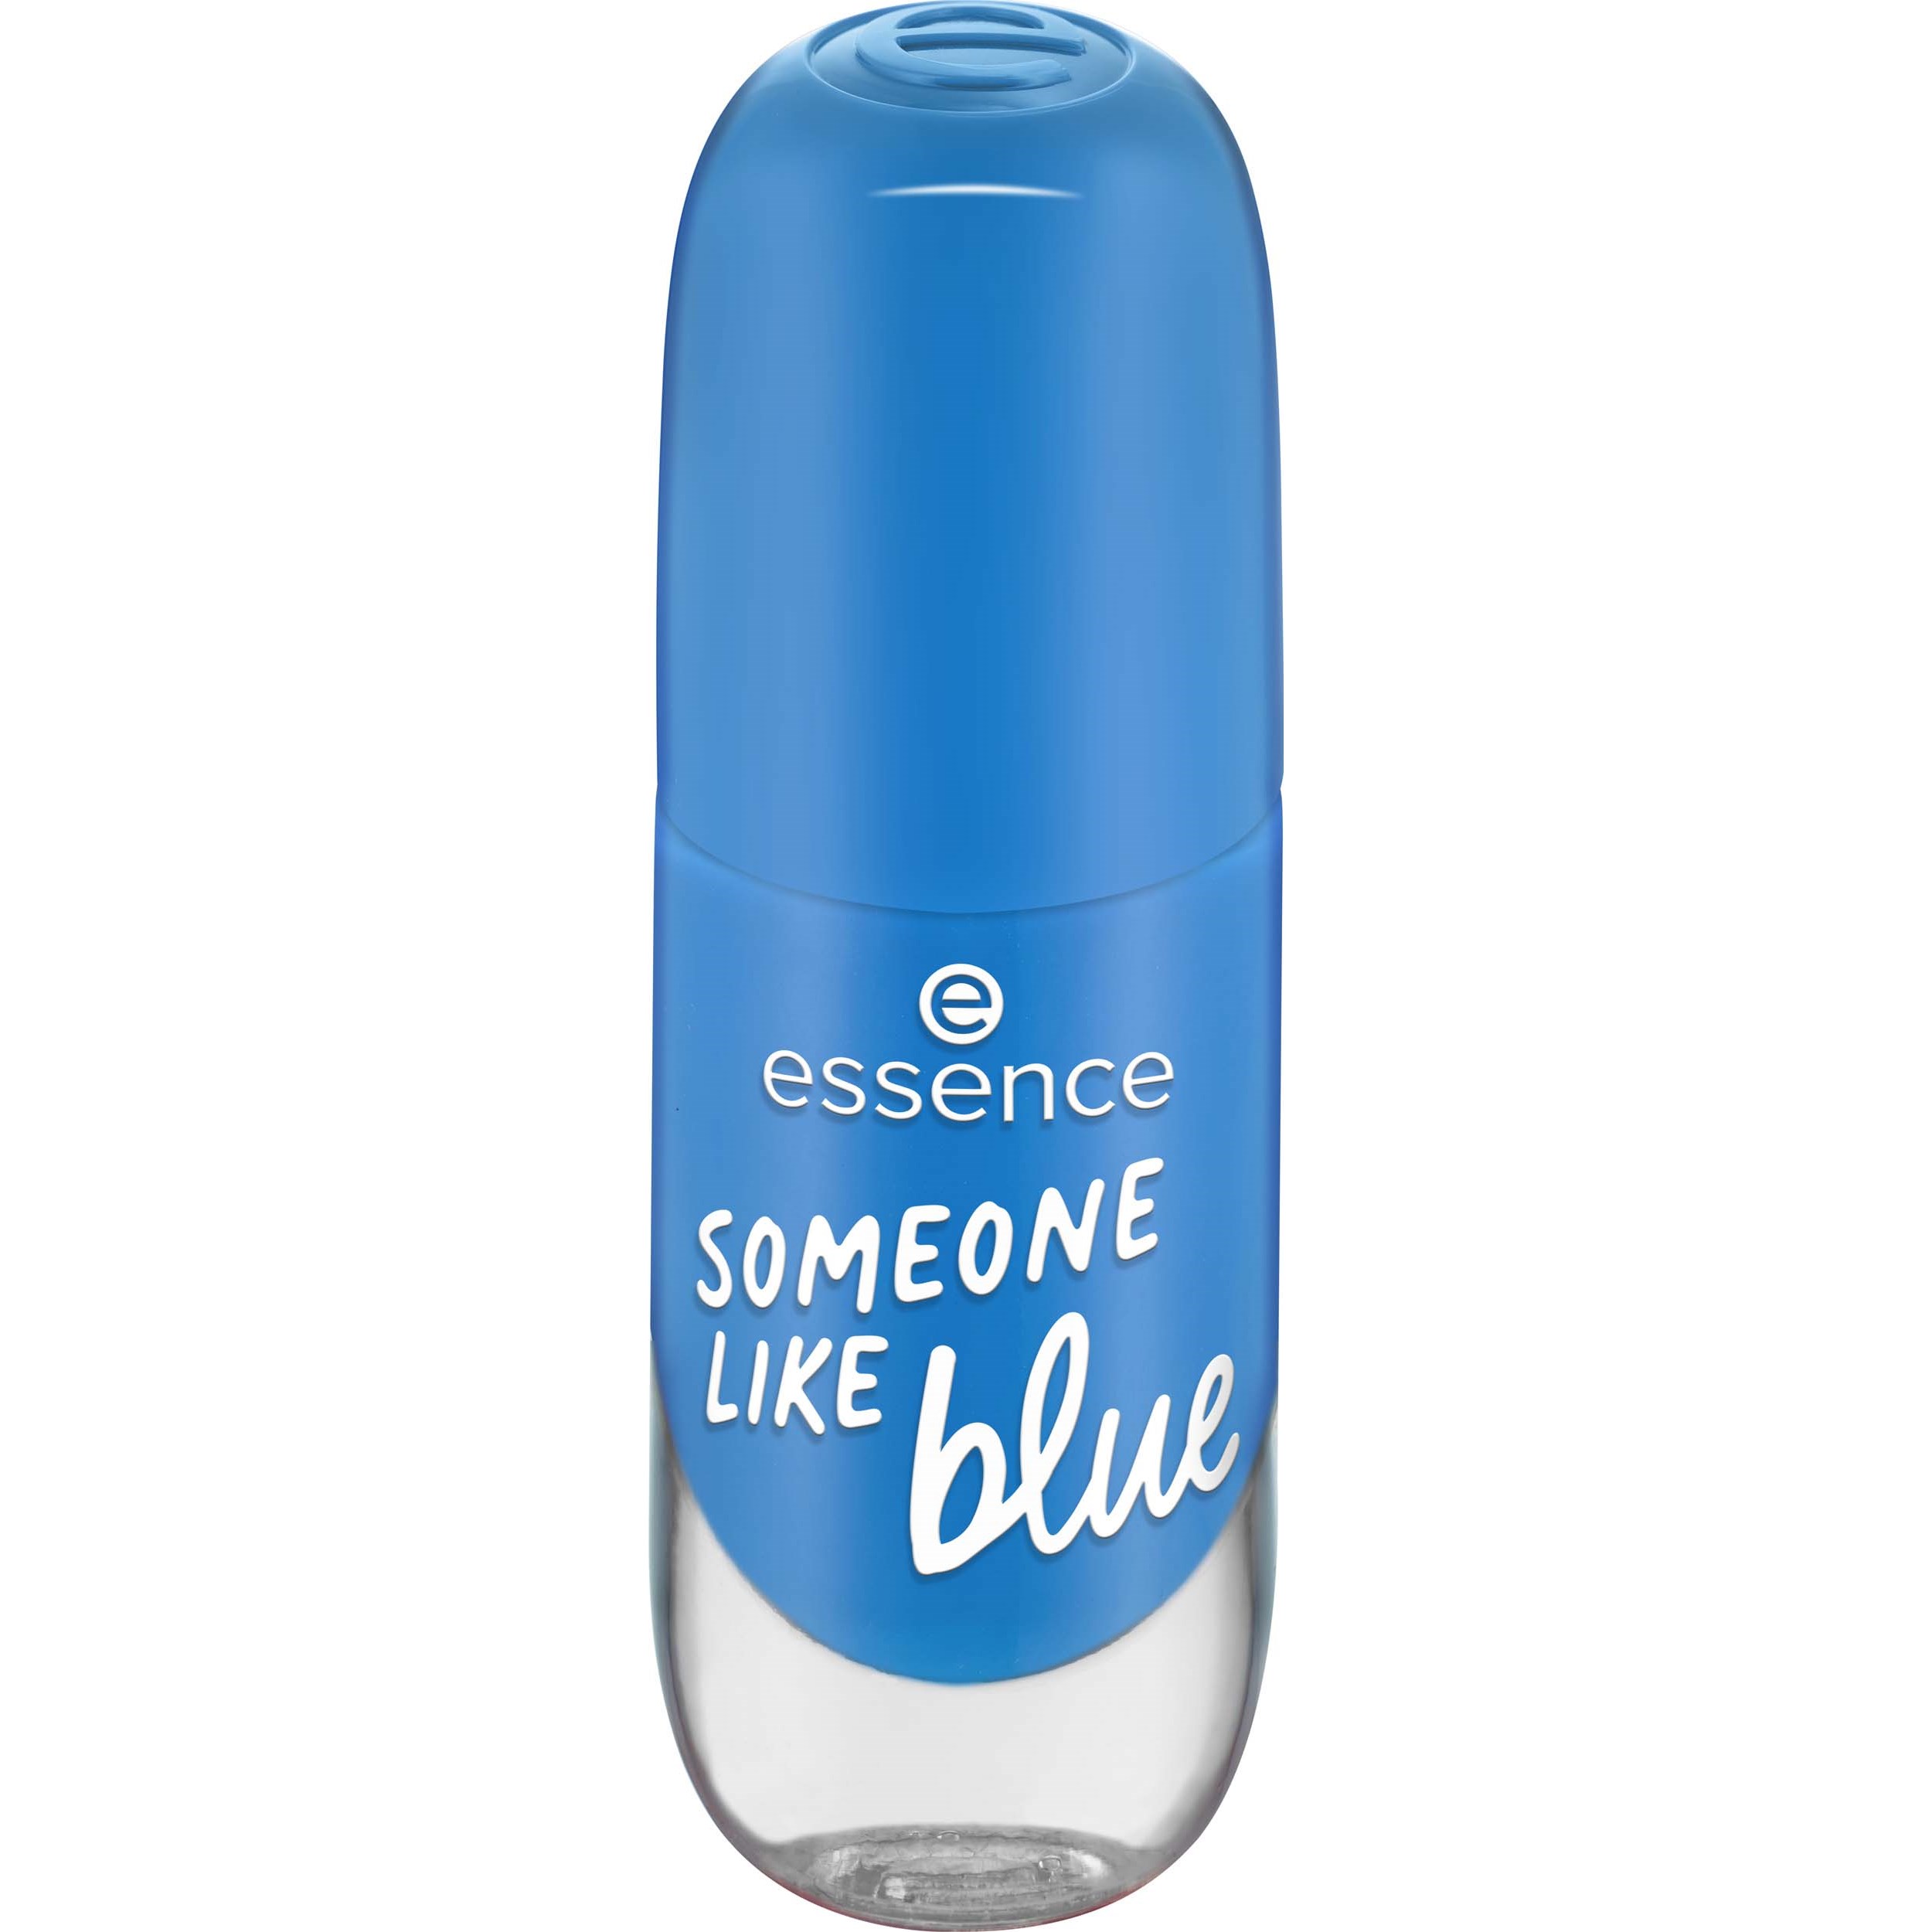 essence gel nail colour 51 SOMEONE LIKE blue